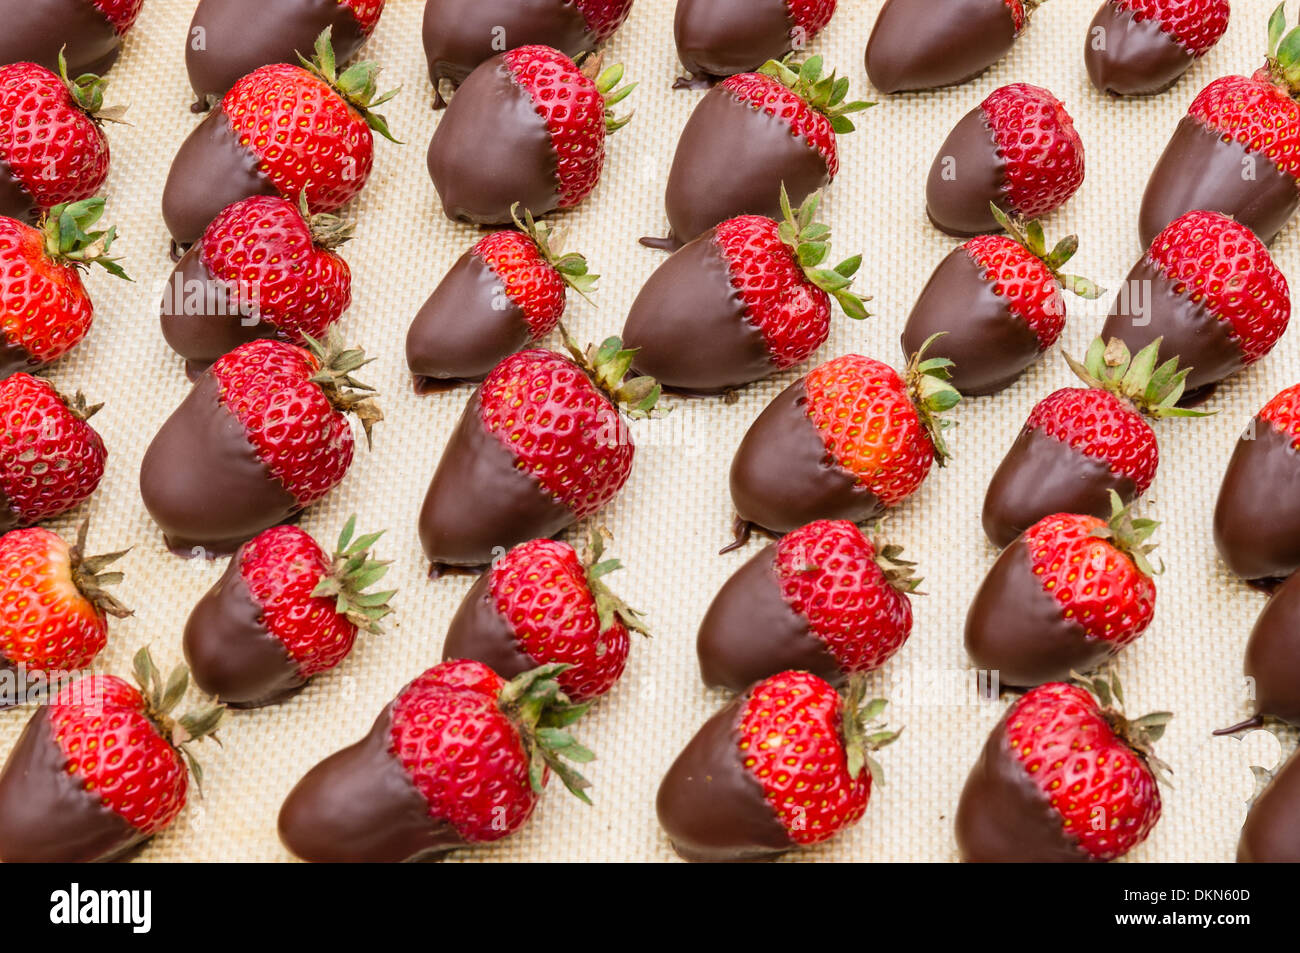 Un plateau de fraises enrobées de chocolat prêt à servir Banque D'Images